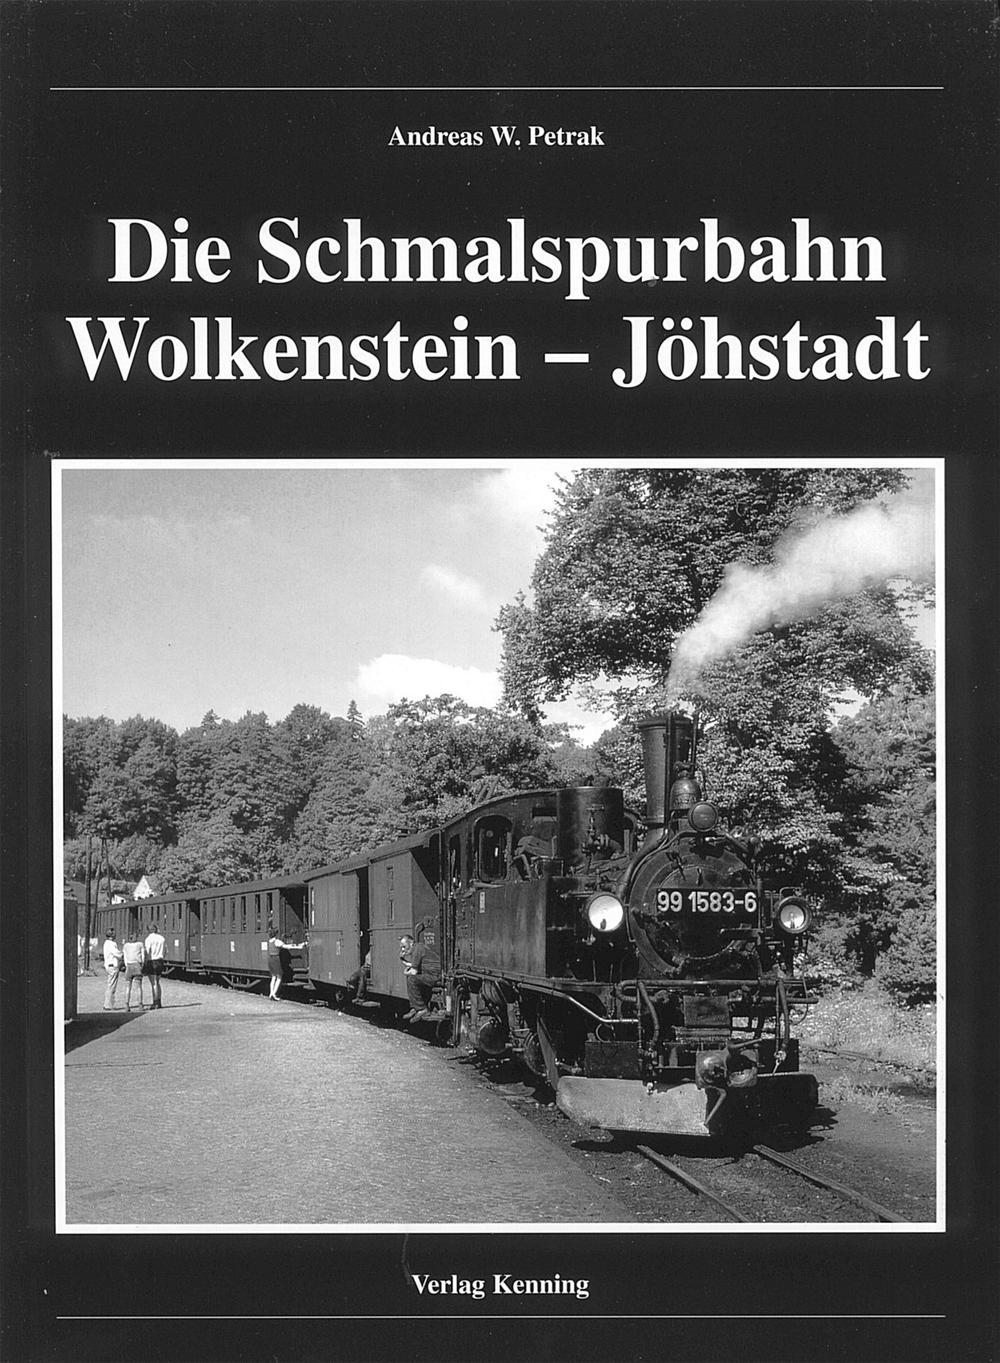 Cover Buch „Die Schmalspurbahn Wolkenstein-Jöhstadt“ (Auflage 5, 2006)